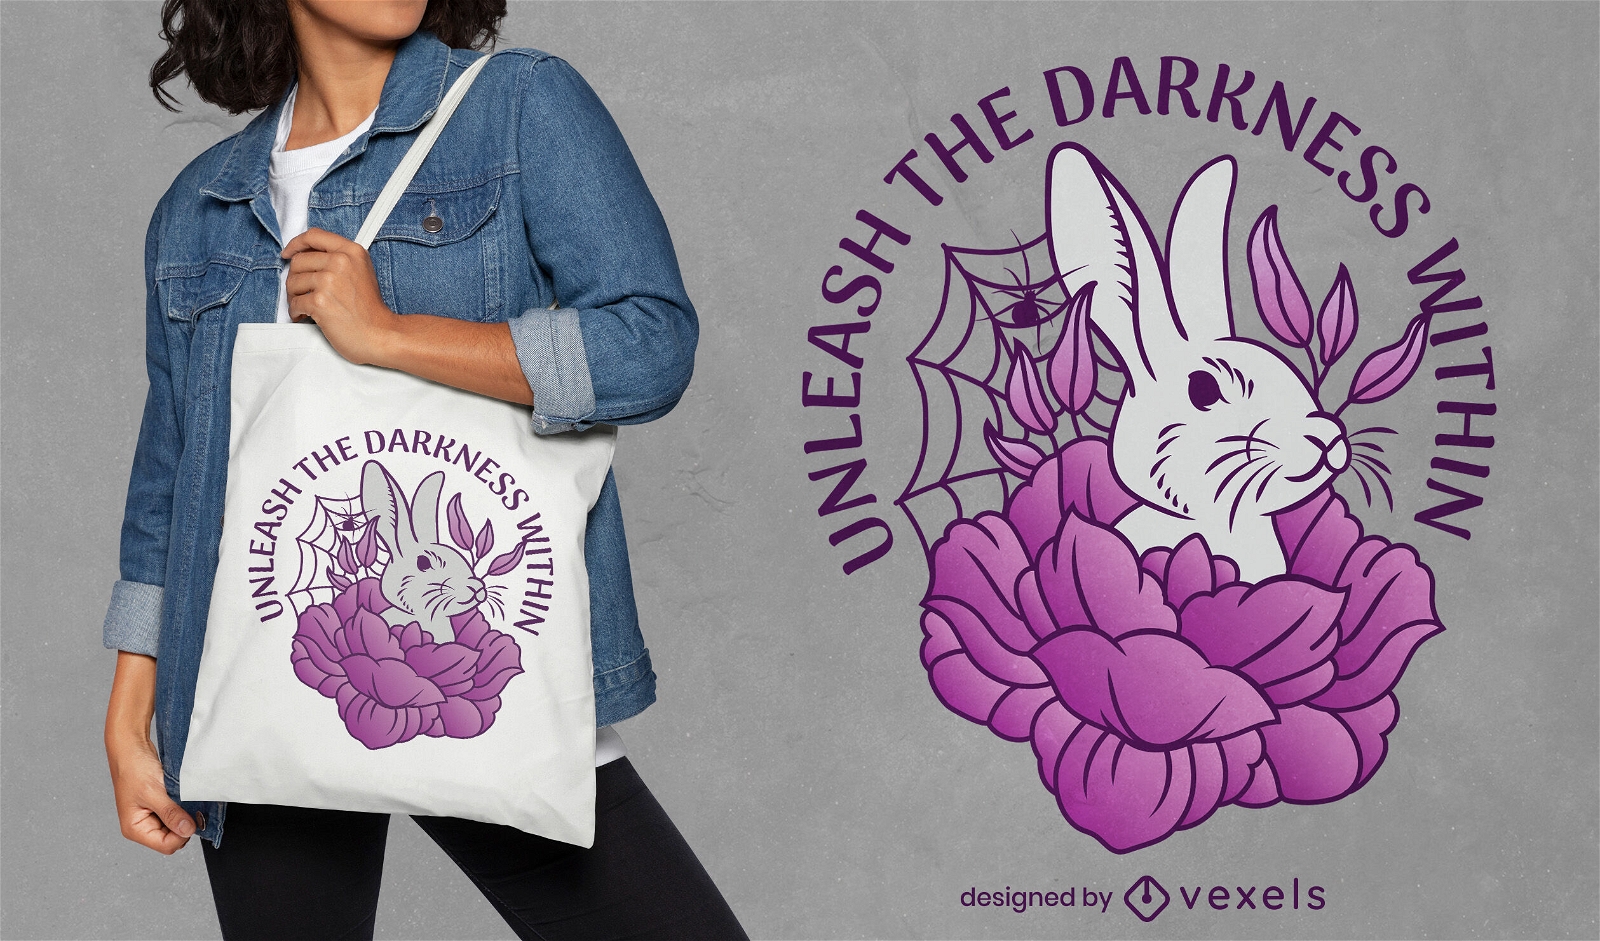 Darkness unleashed tote bag design